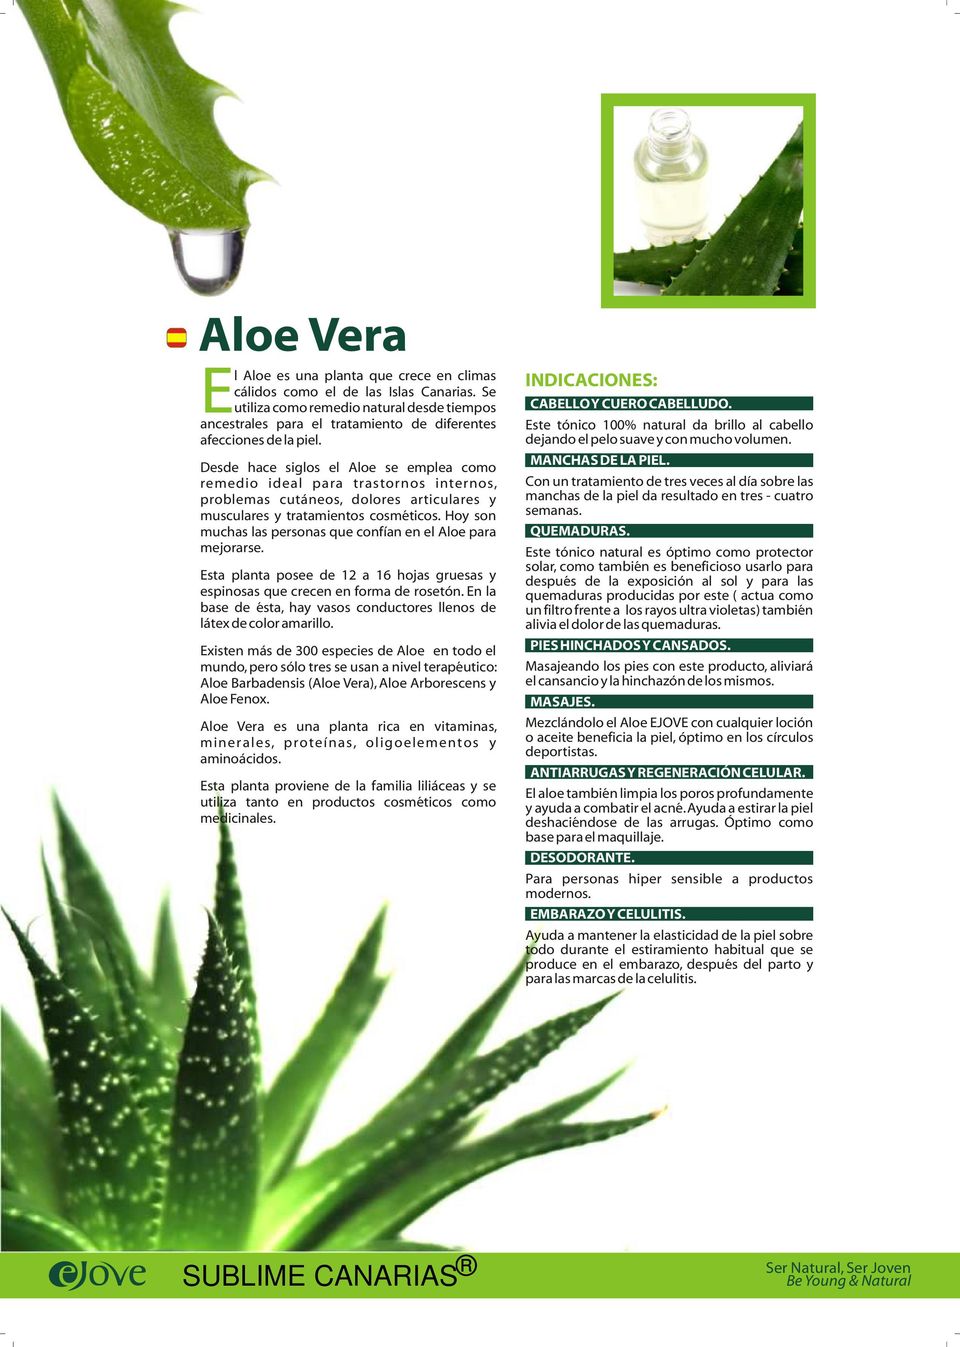 Desde hace siglos el Aloe se emplea como remedio ideal para trastornos internos, problemas cutáneos, dolores articulares y musculares y tratamientos cosméticos.